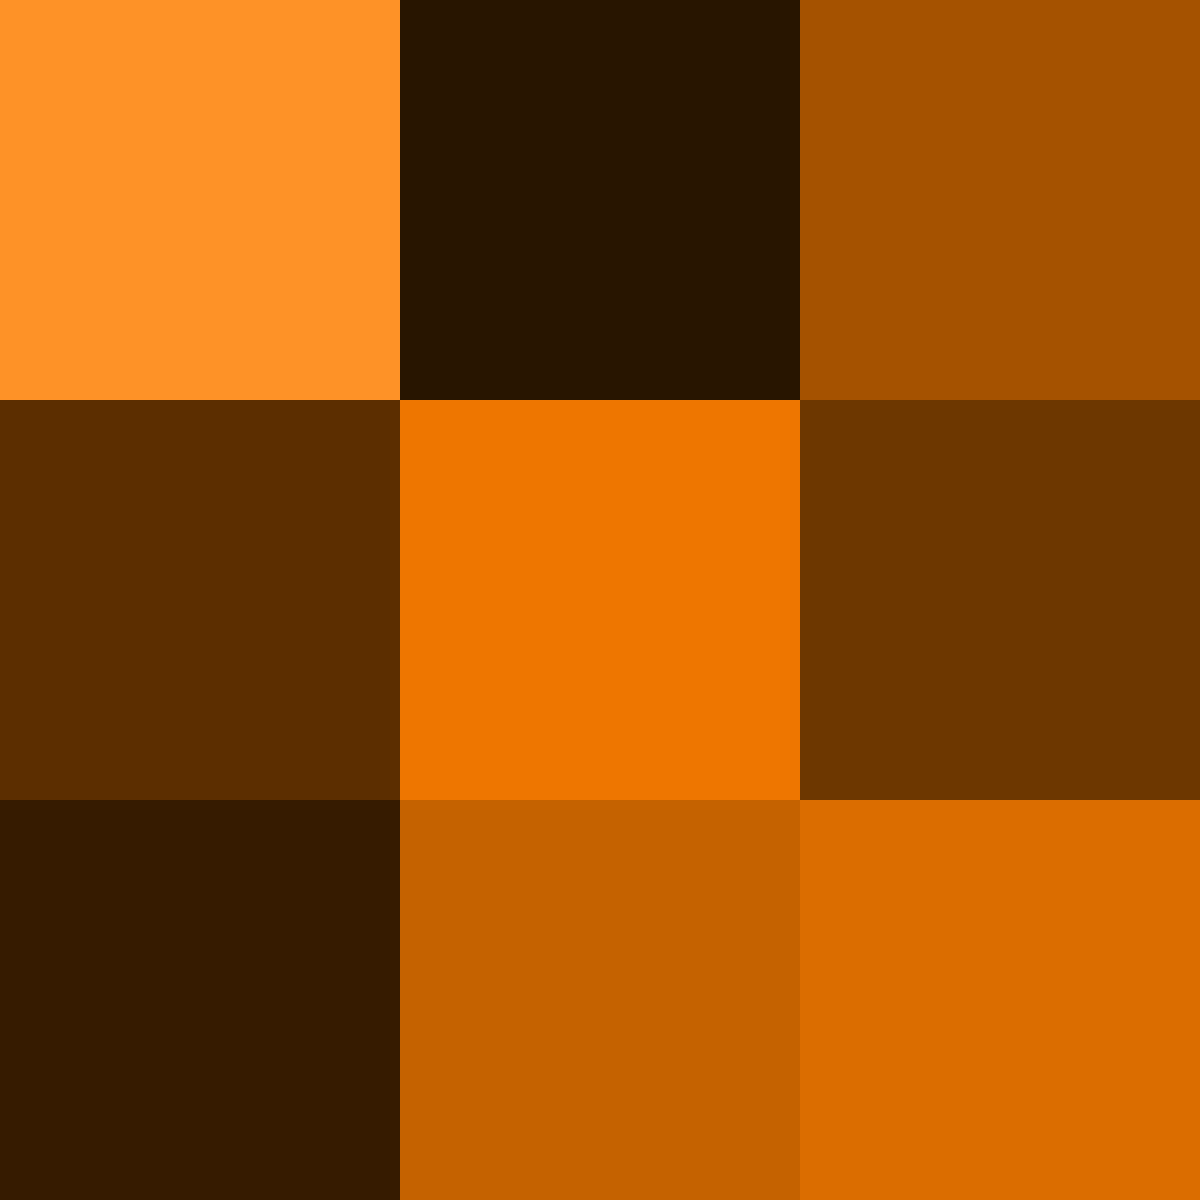 Explanation of orange color